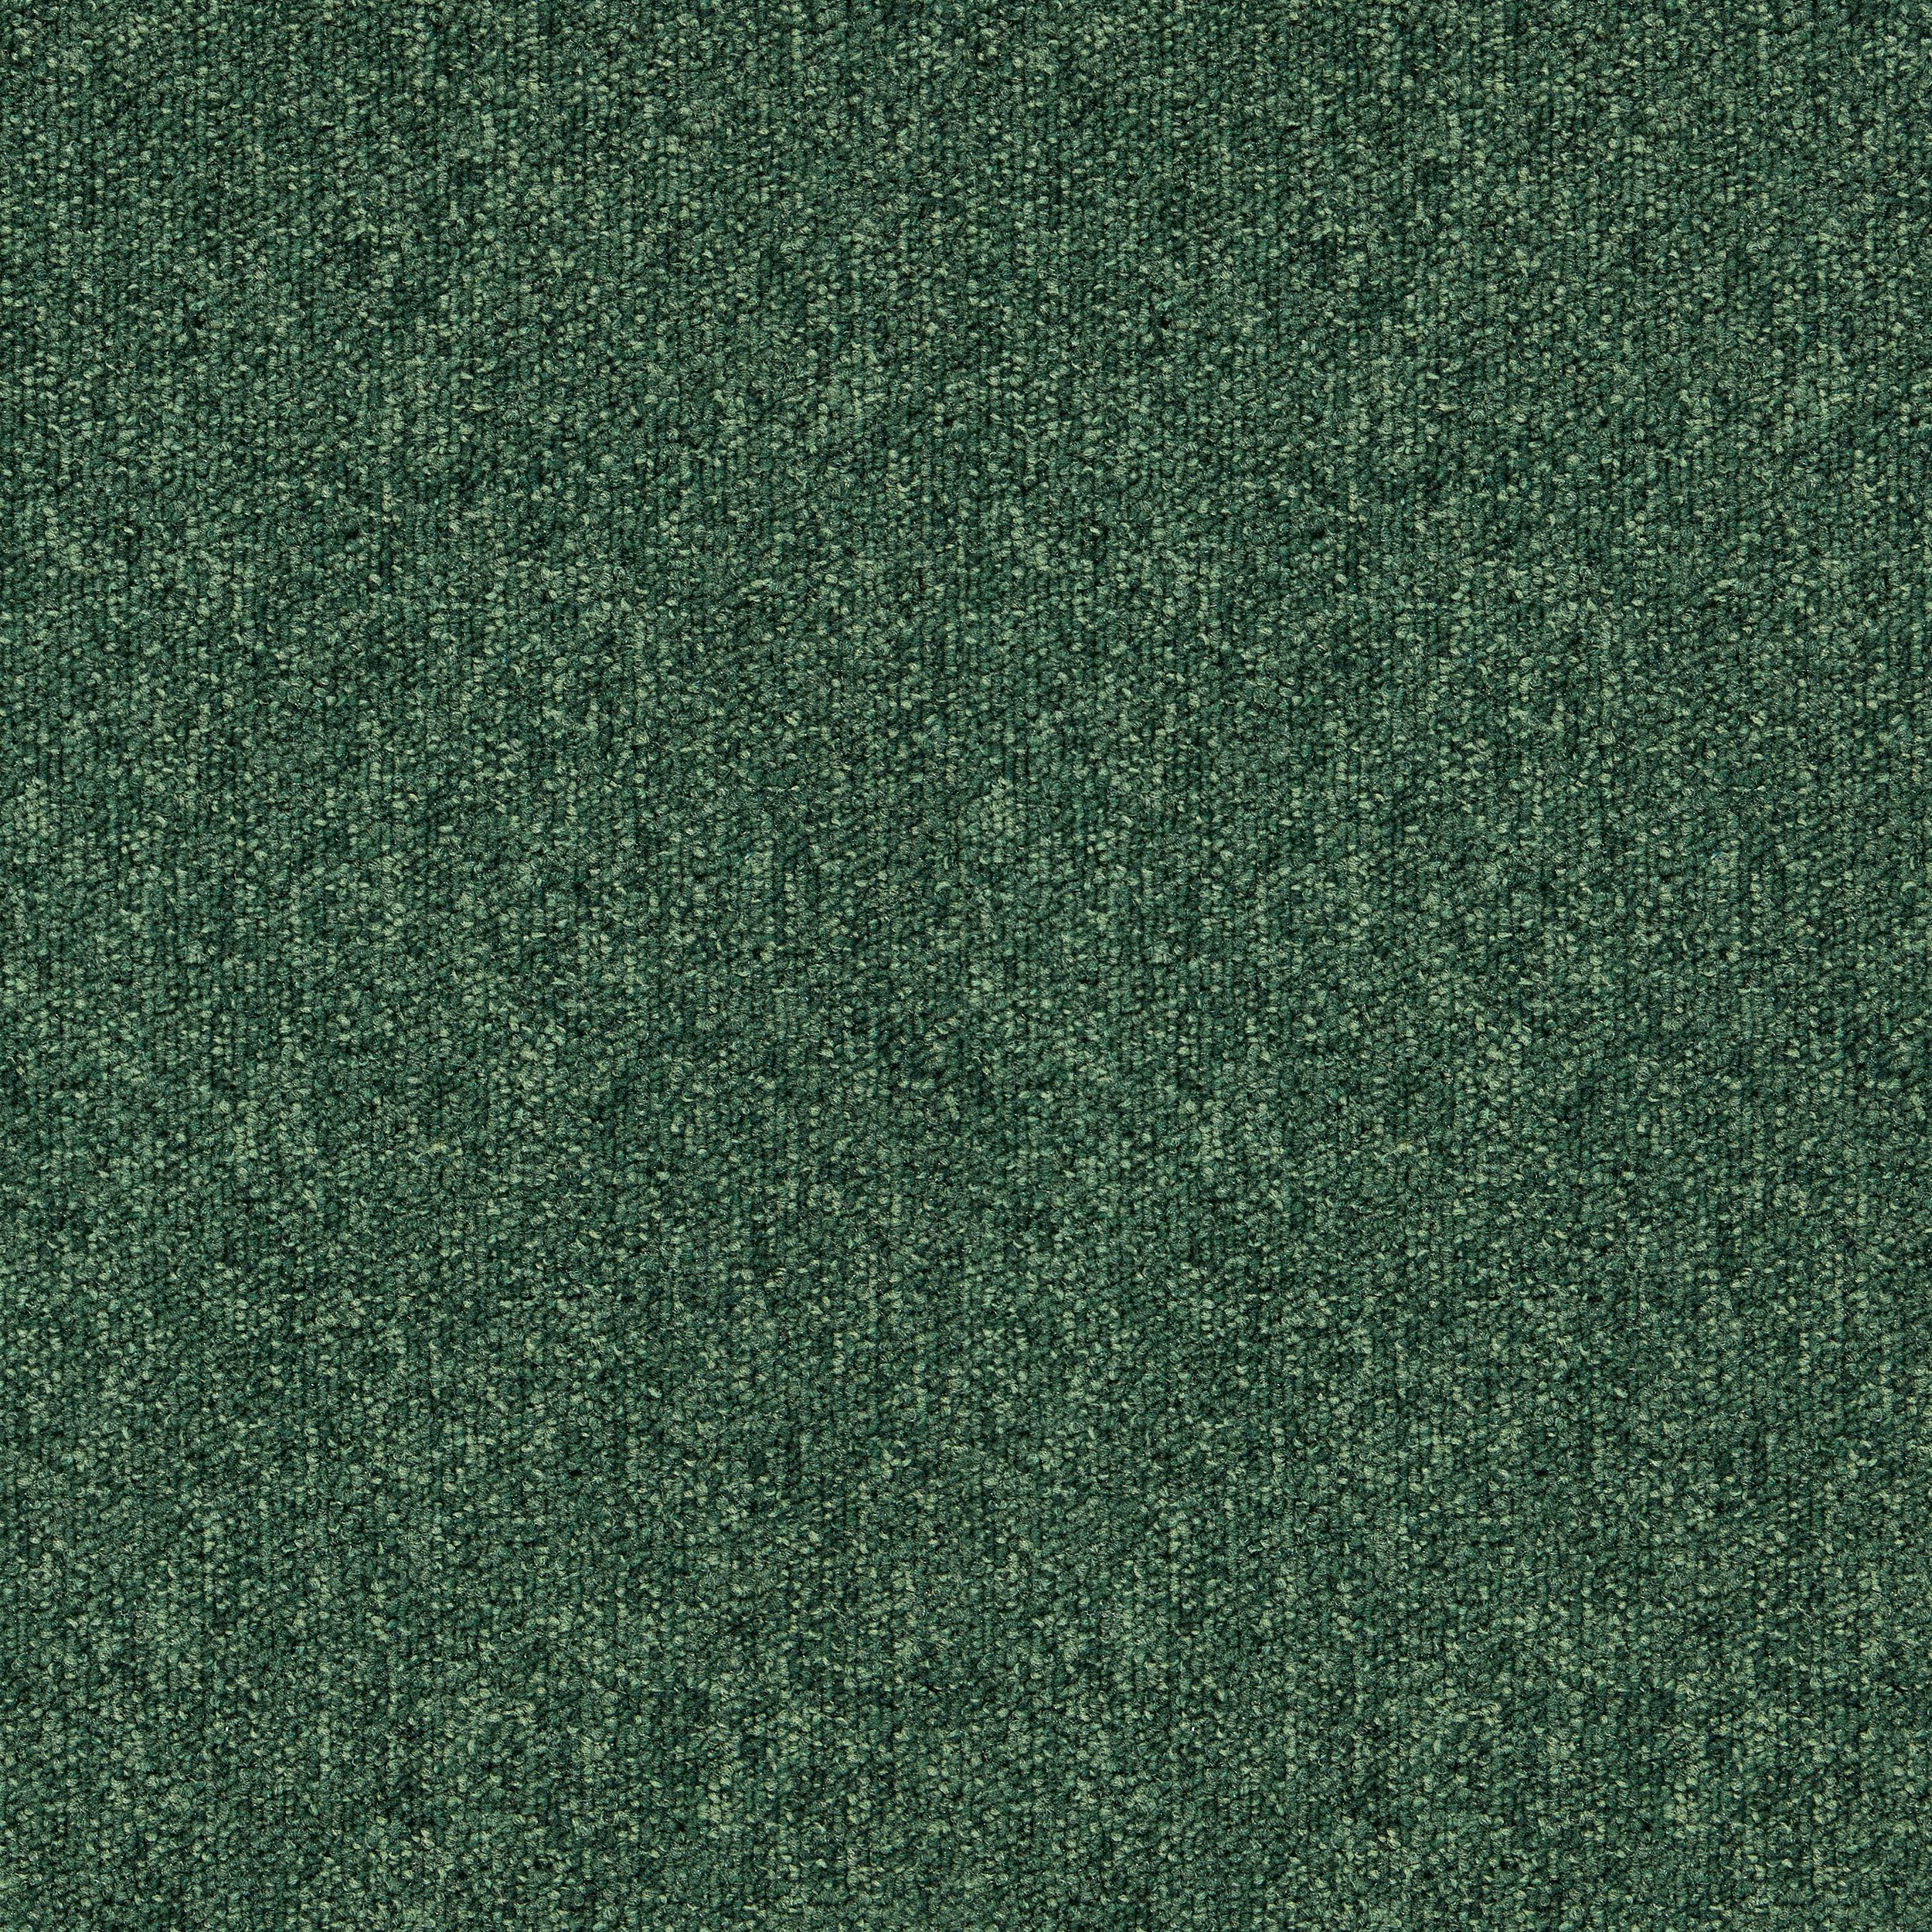 Heuga 727 Carpet Tile In Bottle Green afbeeldingnummer 7